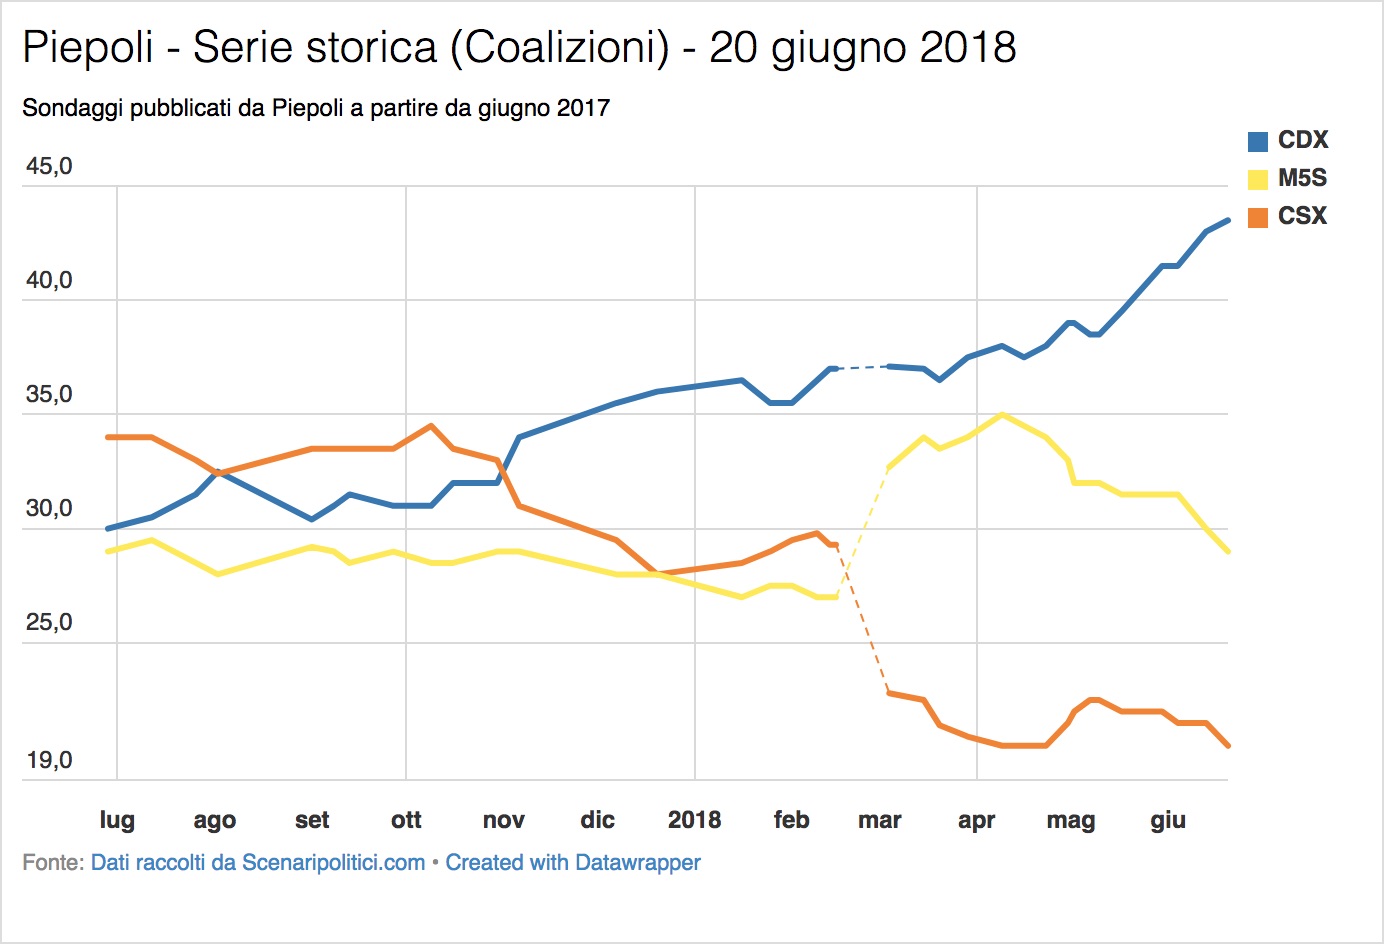 Sondaggi Euromedia Research & Piepoli (20 giugno 2018)